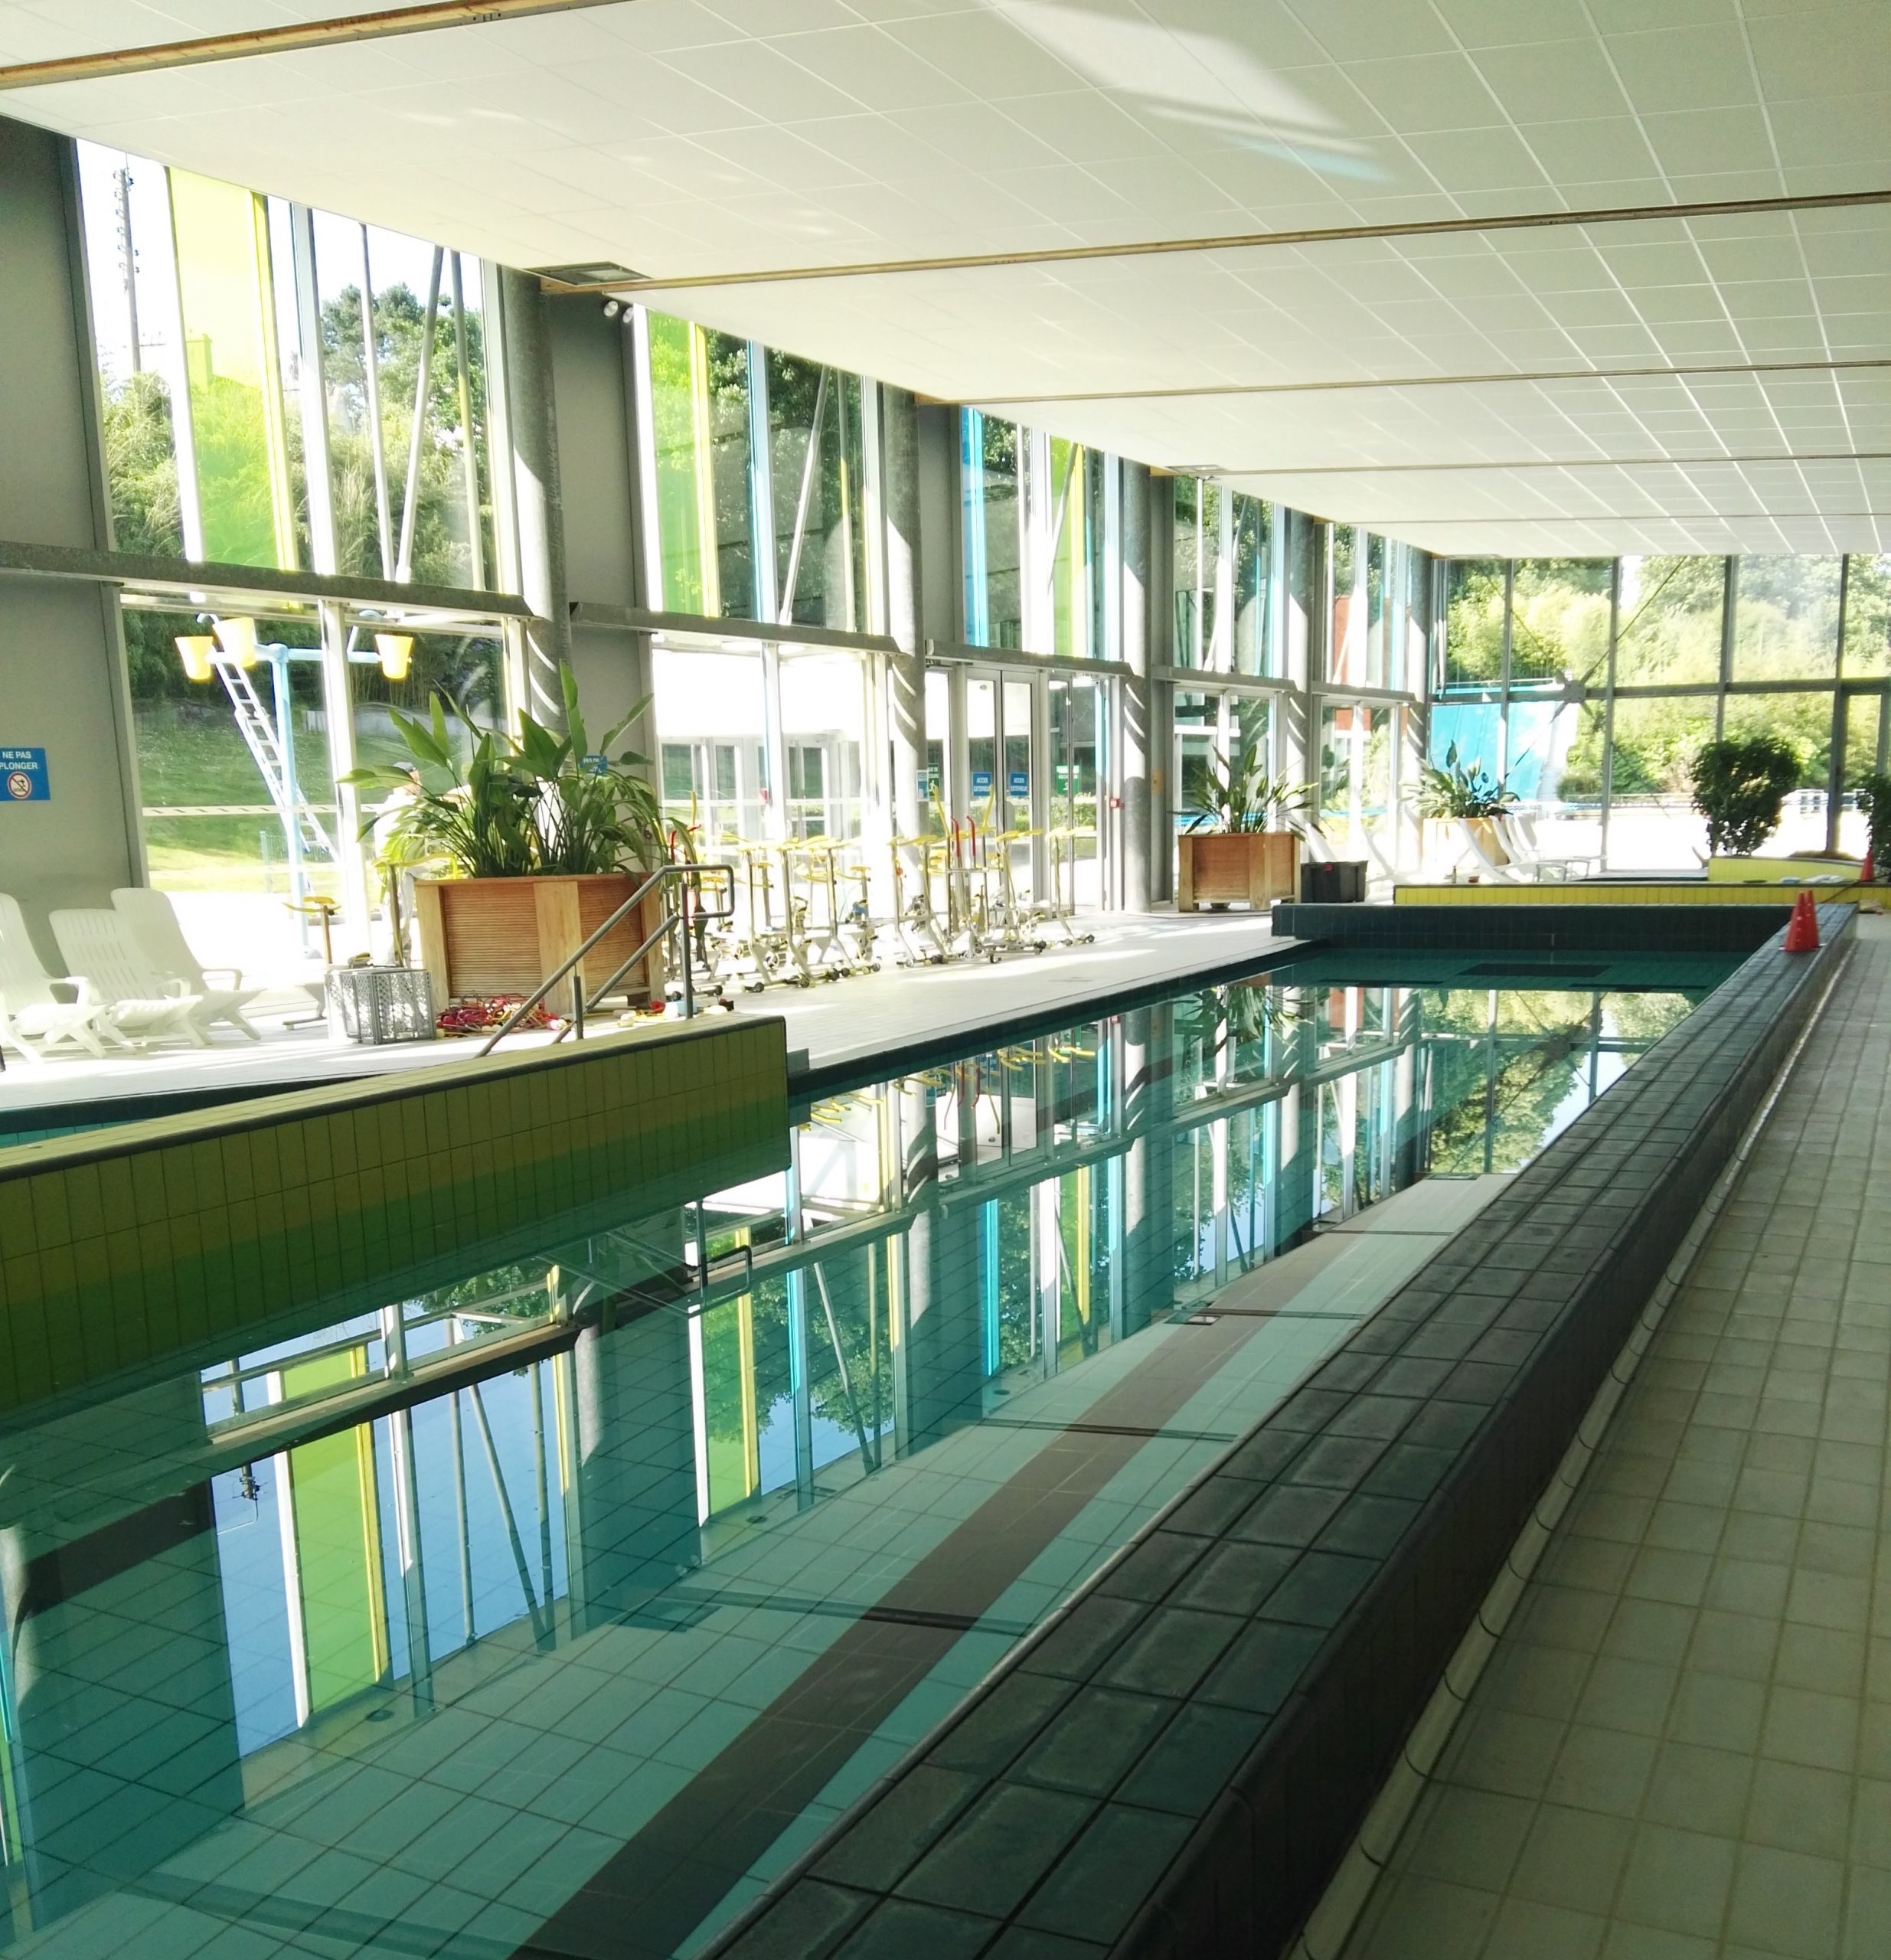 Centre Aquatique Aqualorn intérieur Piscine Landerneau